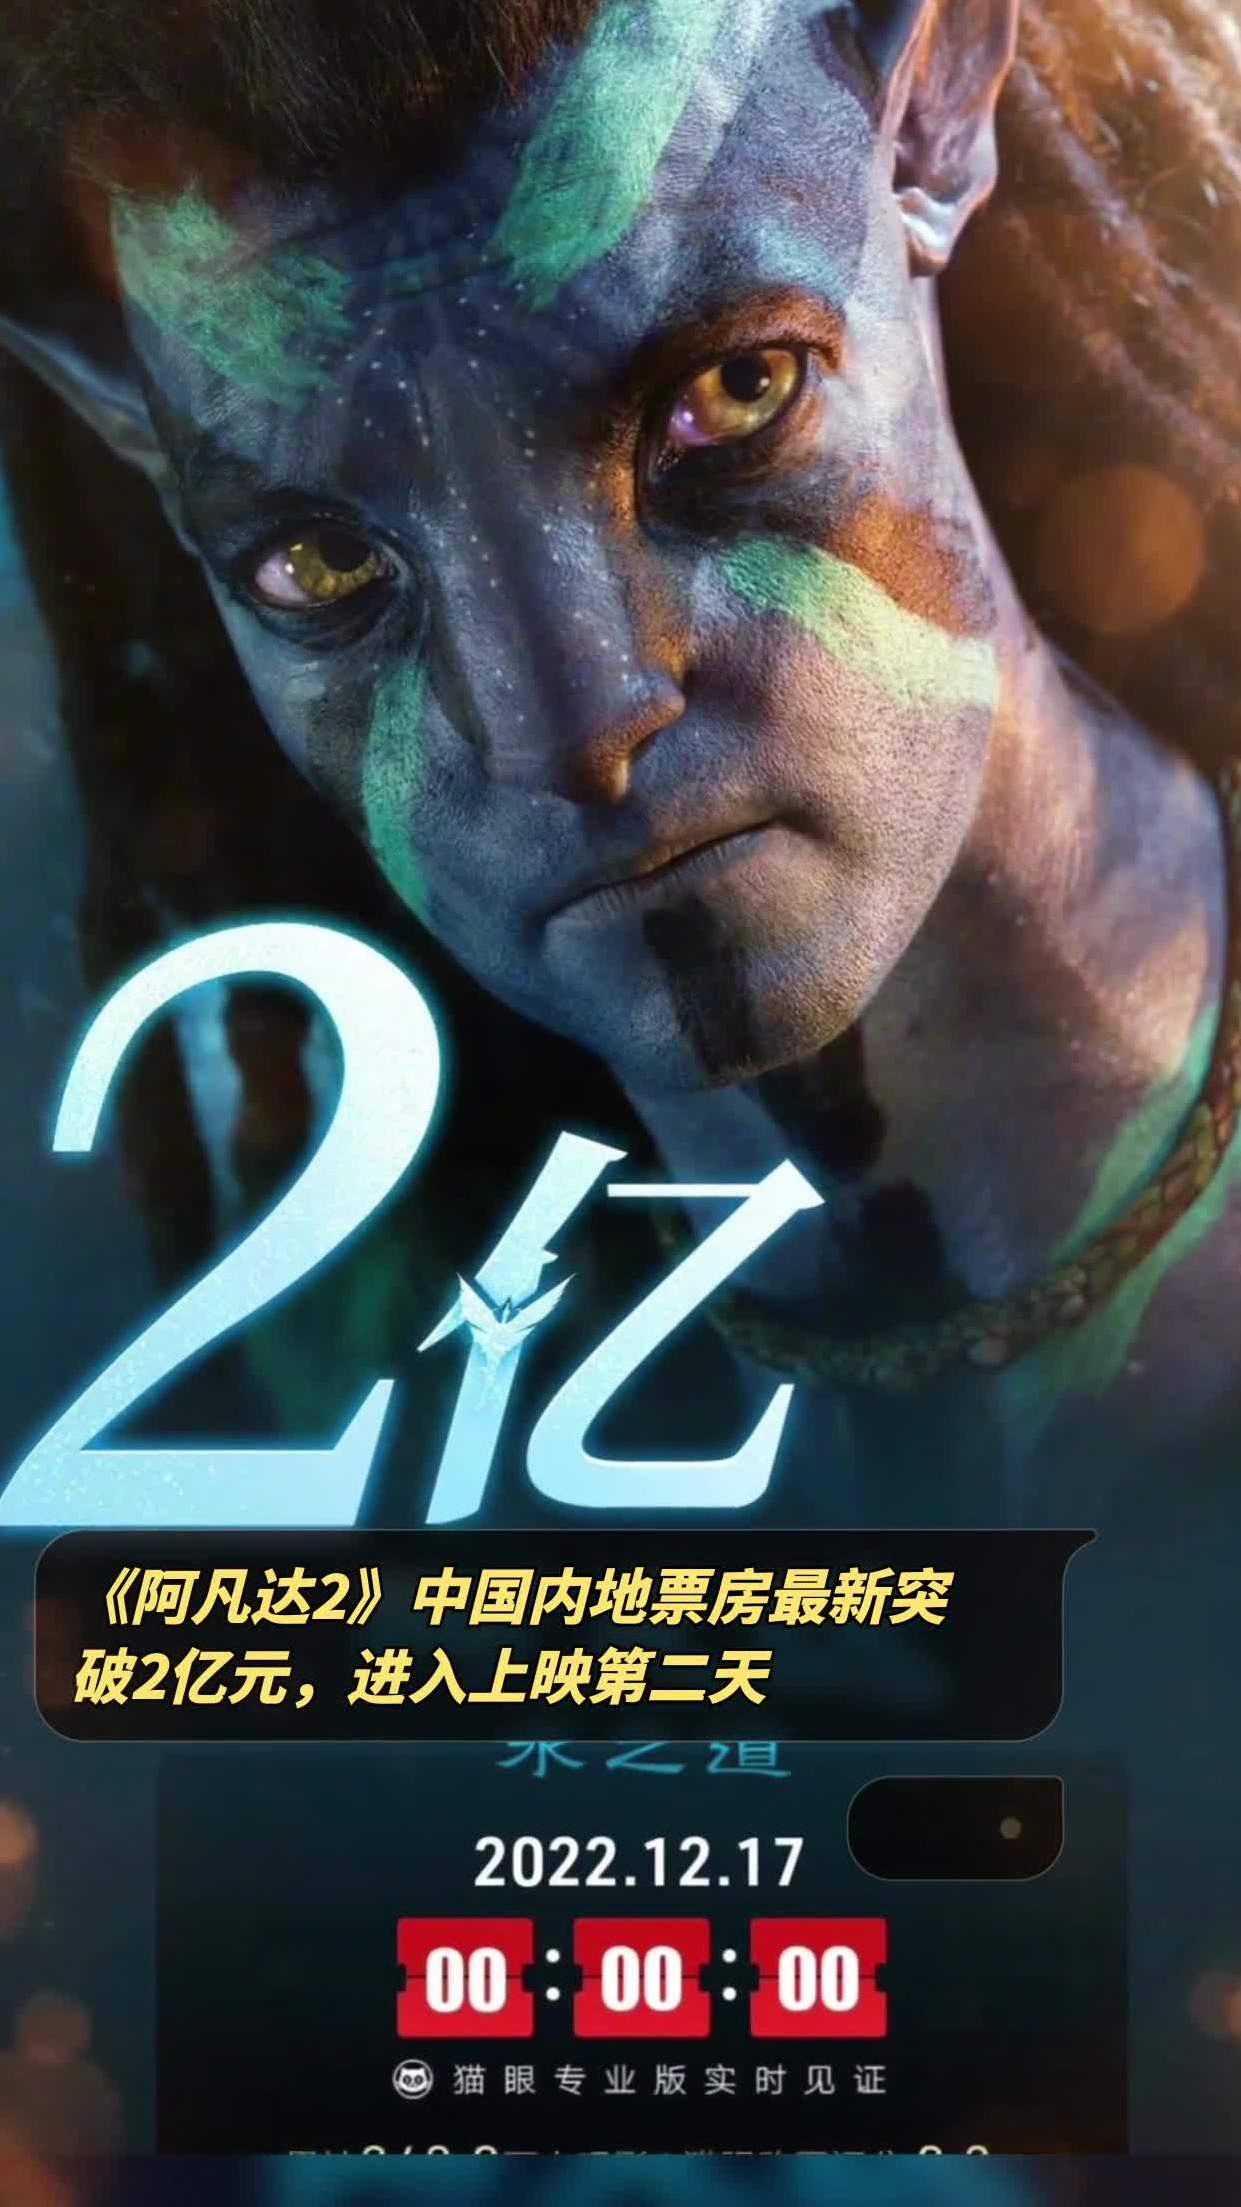 《阿凡达2》中国内地票房最新突破2亿元,进入上映第二天